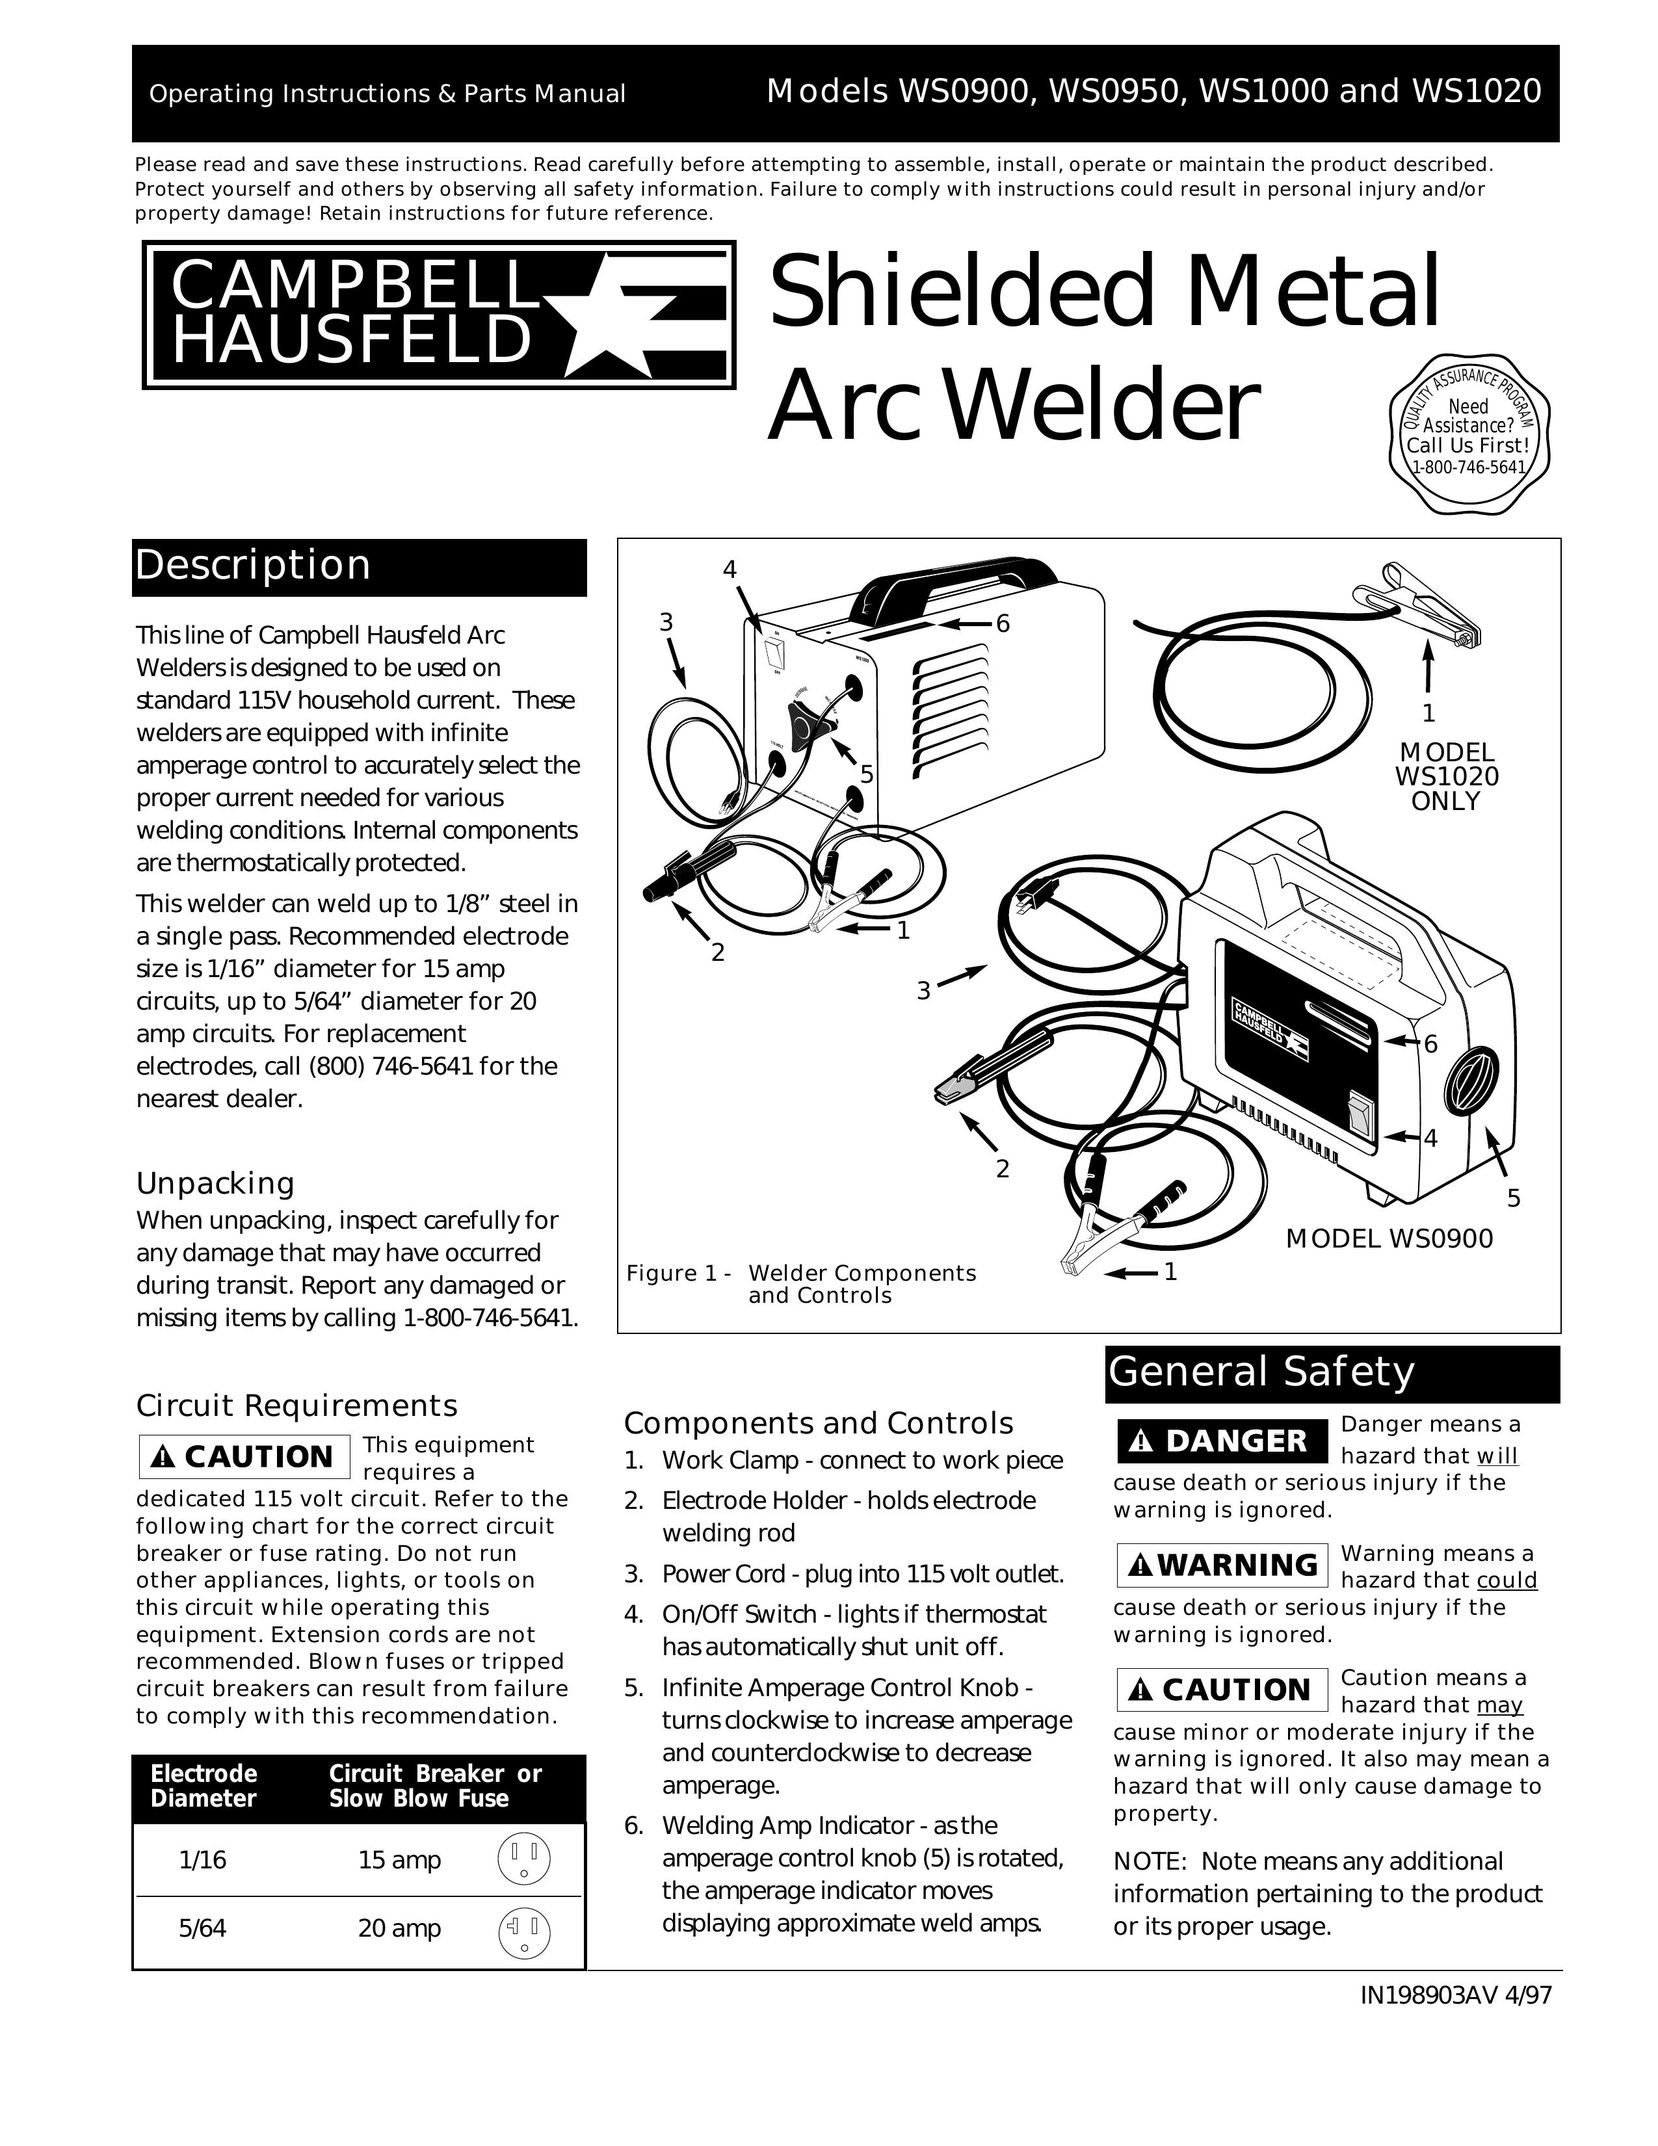 Campbell Hausfeld WS1020 Welder User Manual